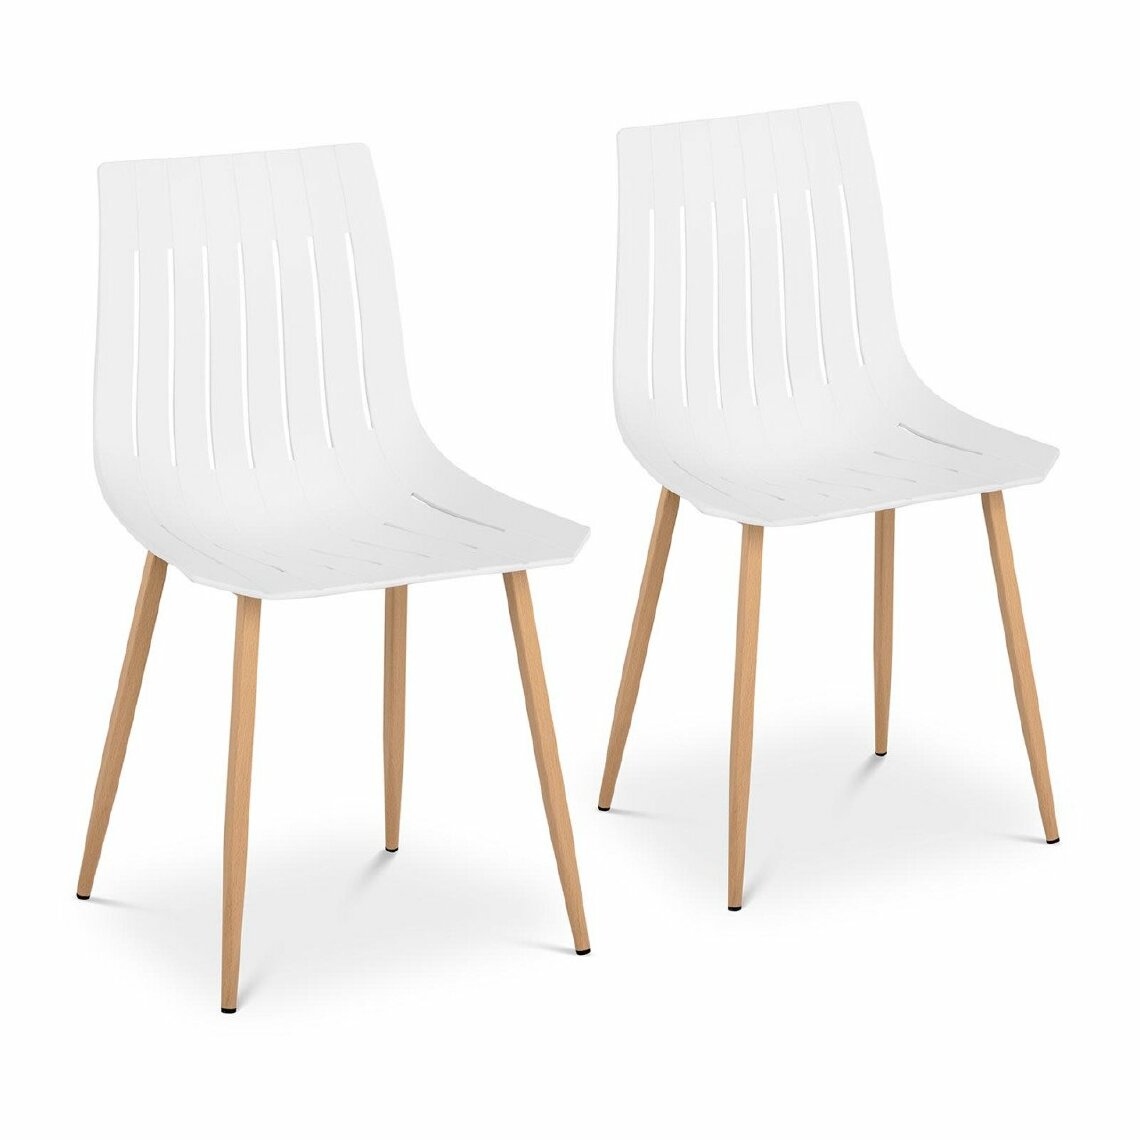 Helloshop26 - Lot de 2 chaises salon salle à manger 150 kg max surface d'assise de 50 x 47 cm coloris blanc 14_0000876 - Chaises